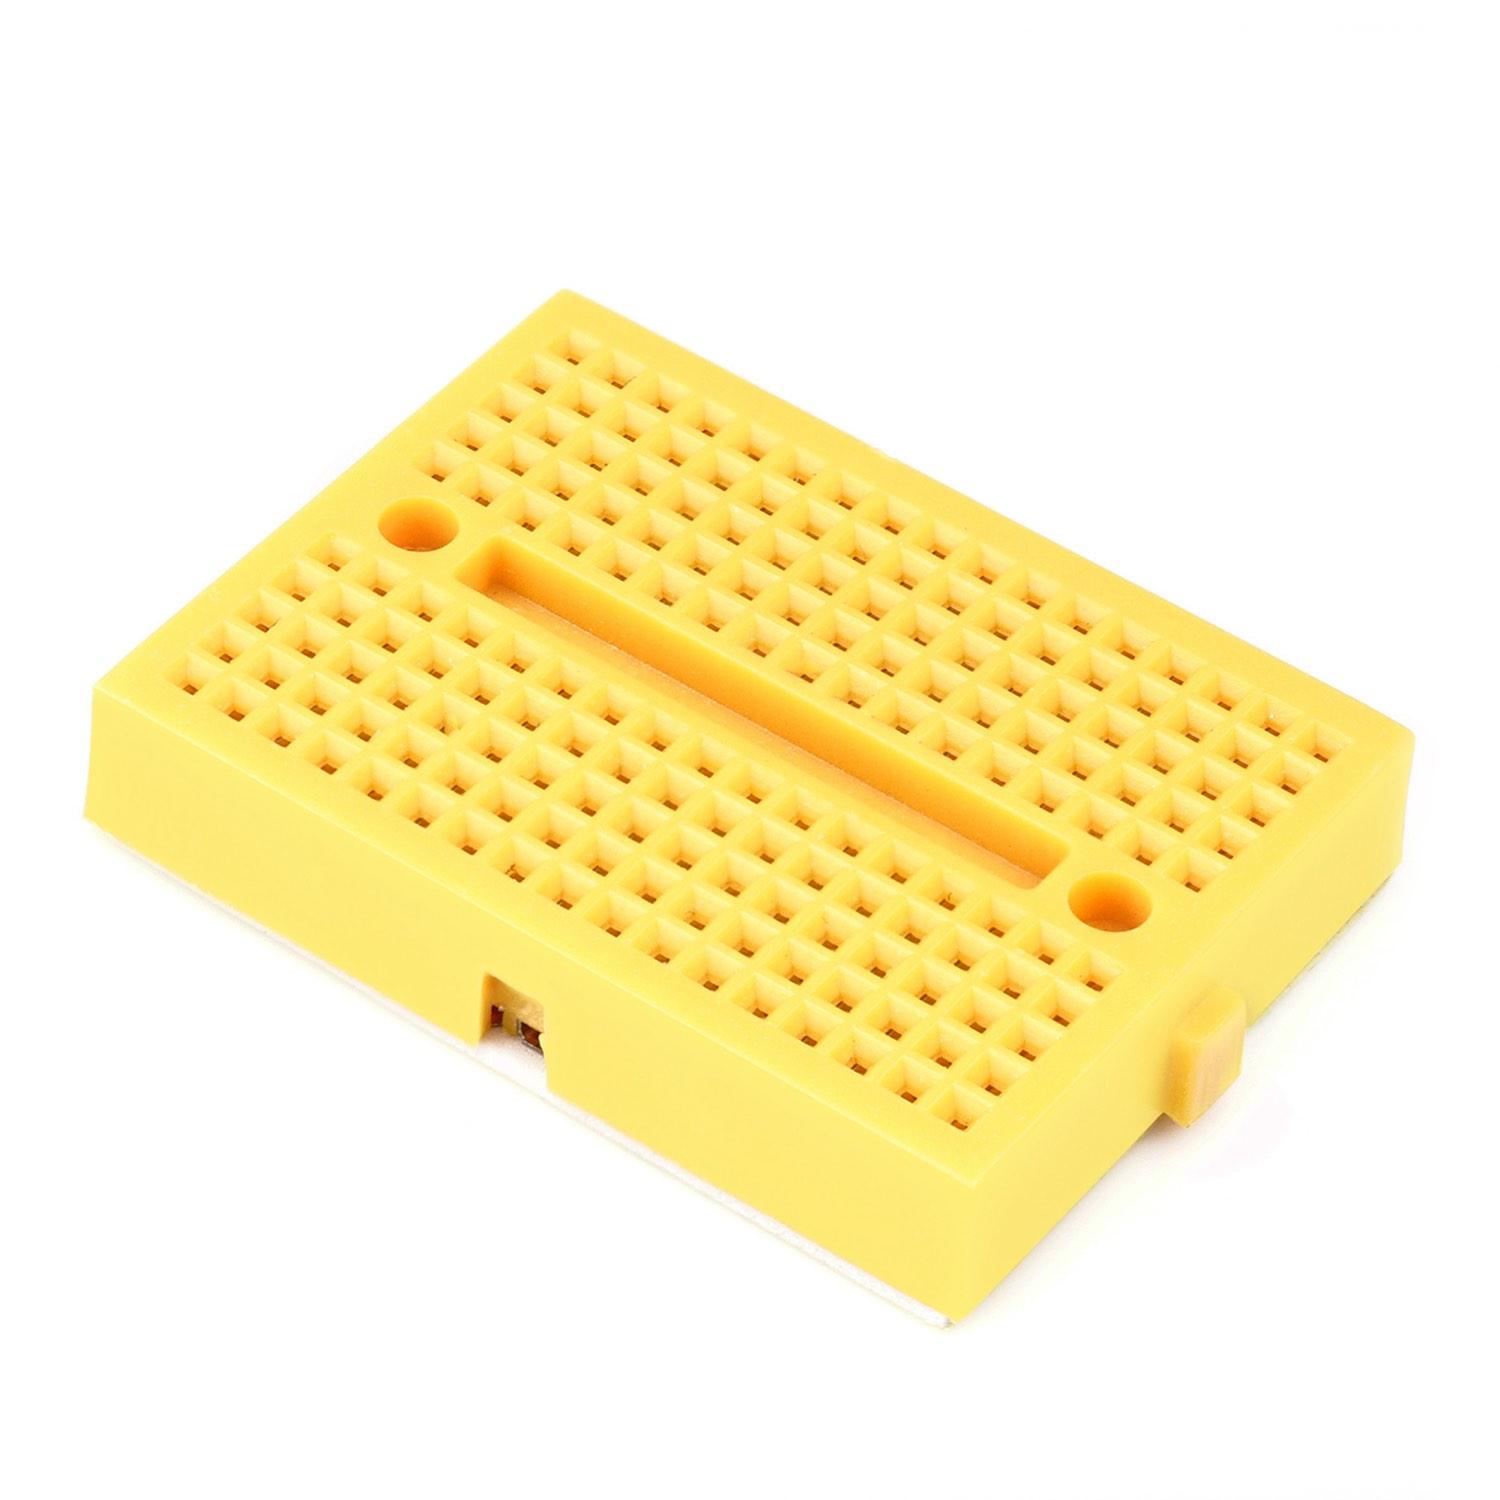 Mini Breadboard mit 170 Kontakten - Farbe: gelb